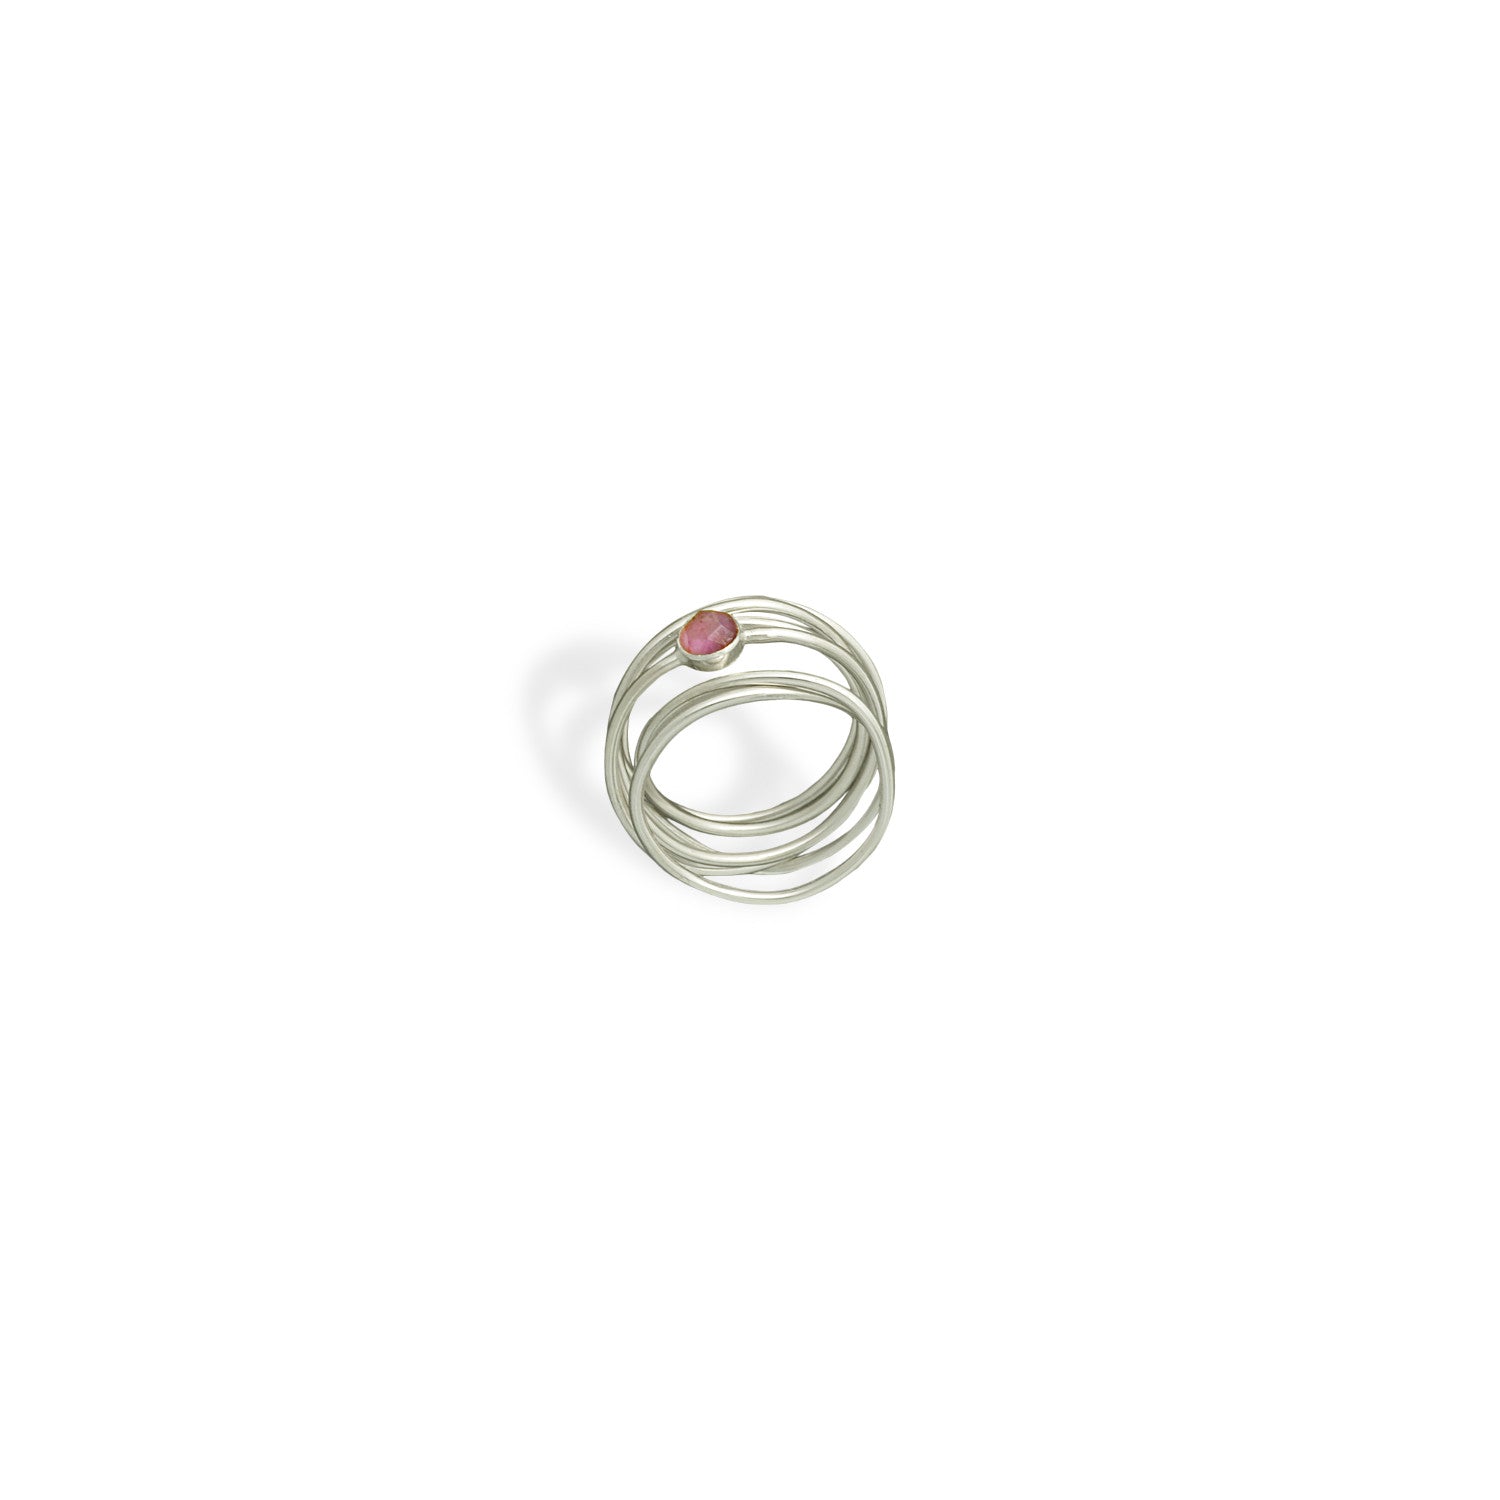 Χειροποίητο δαχτυλίδι από ασημένια σύρματα με στρόγγυλη ημιπολύτιμη πέτρα (Ροδολίτης) Νο2